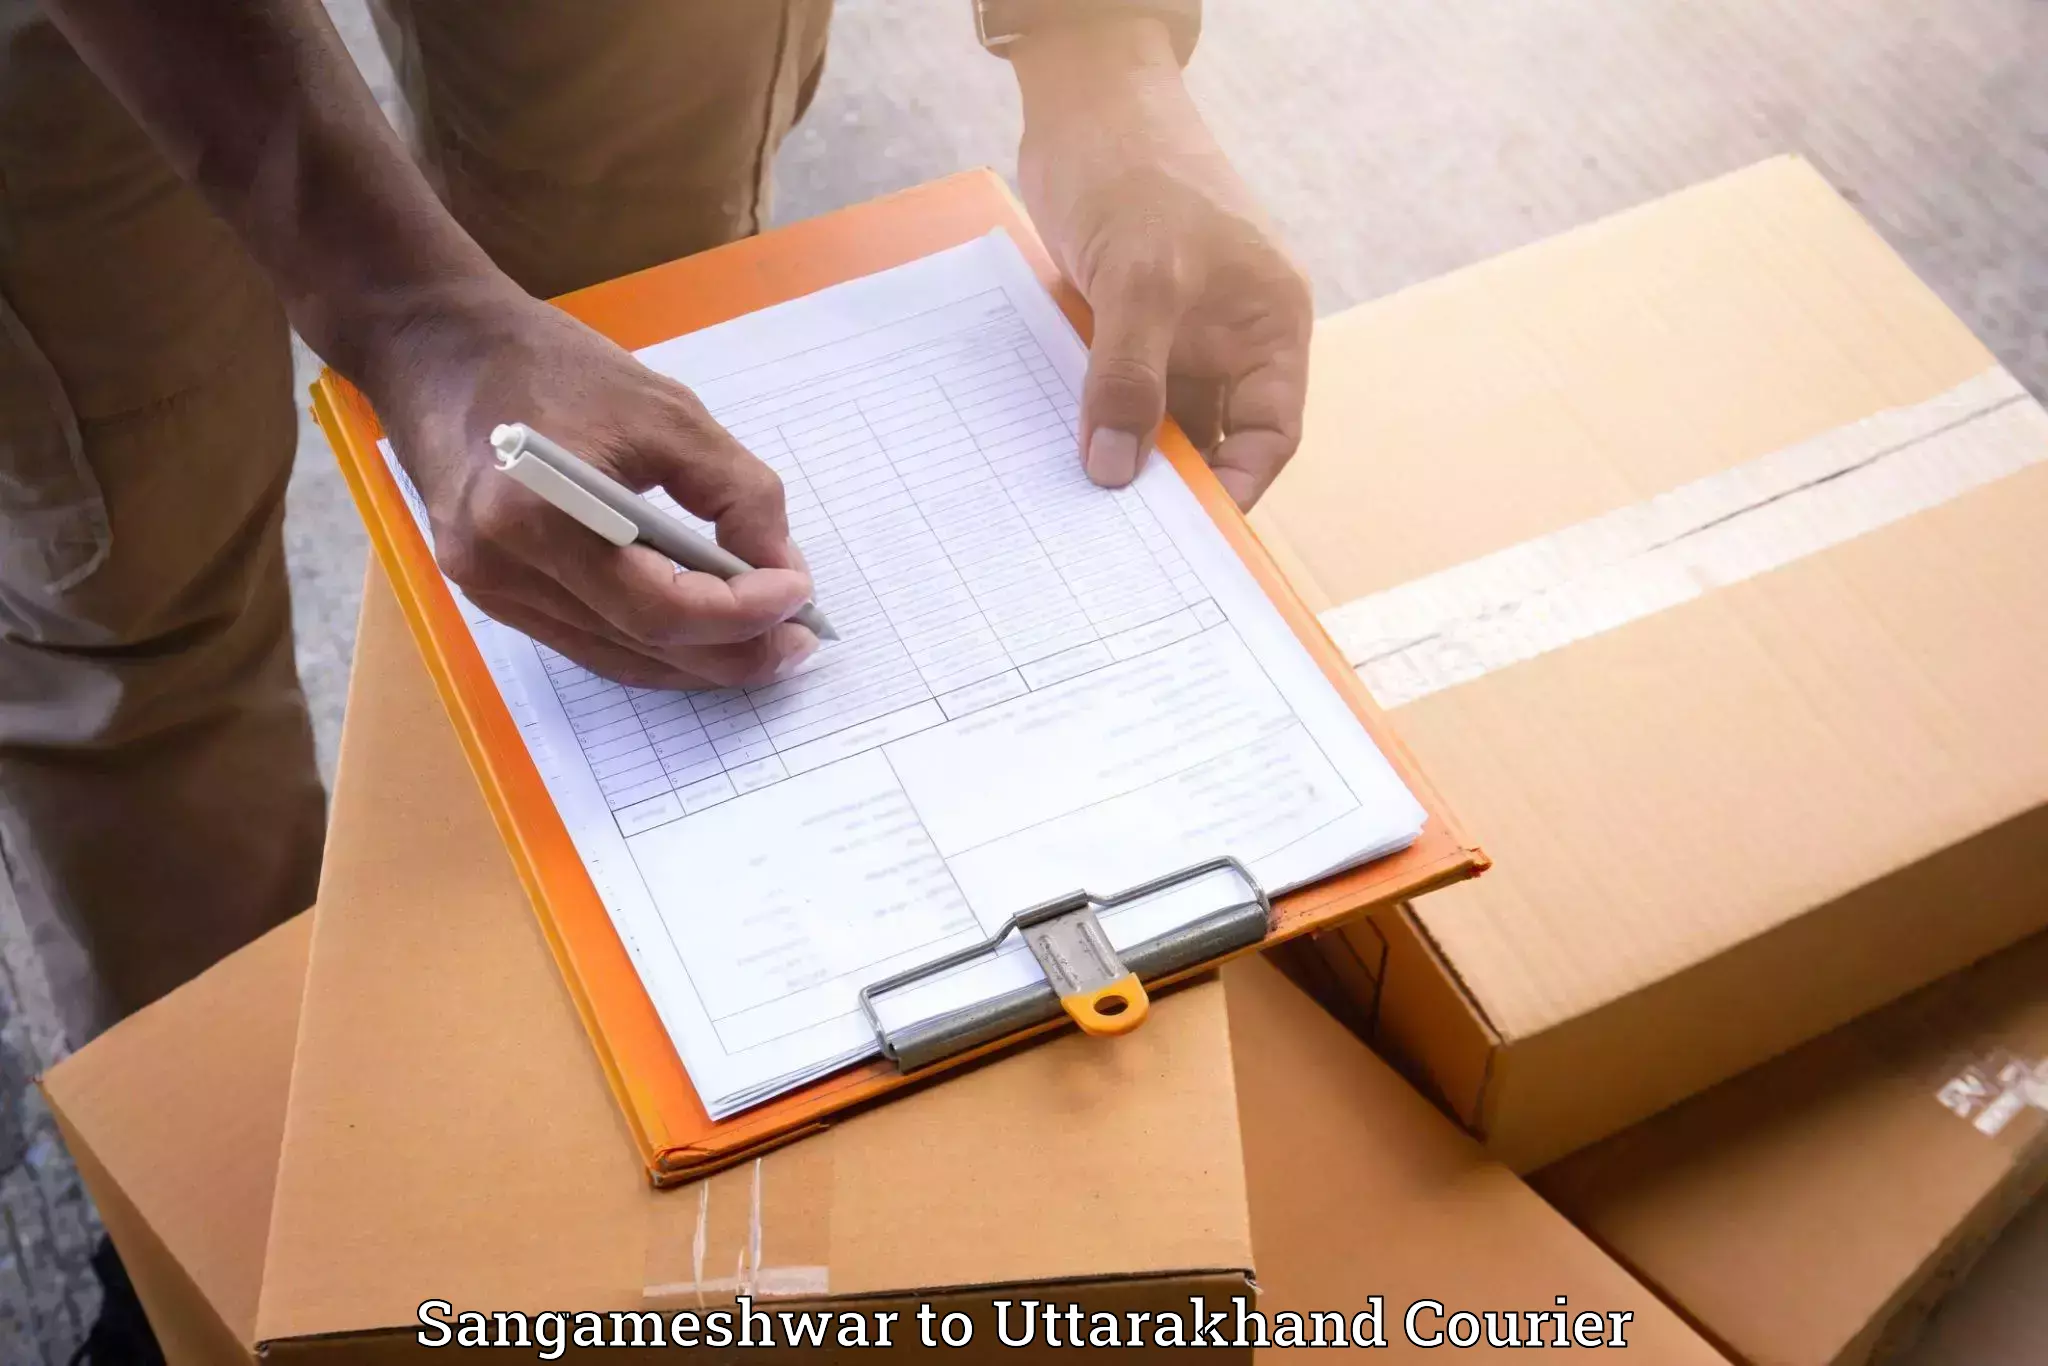 Furniture moving experts Sangameshwar to Bhimtal